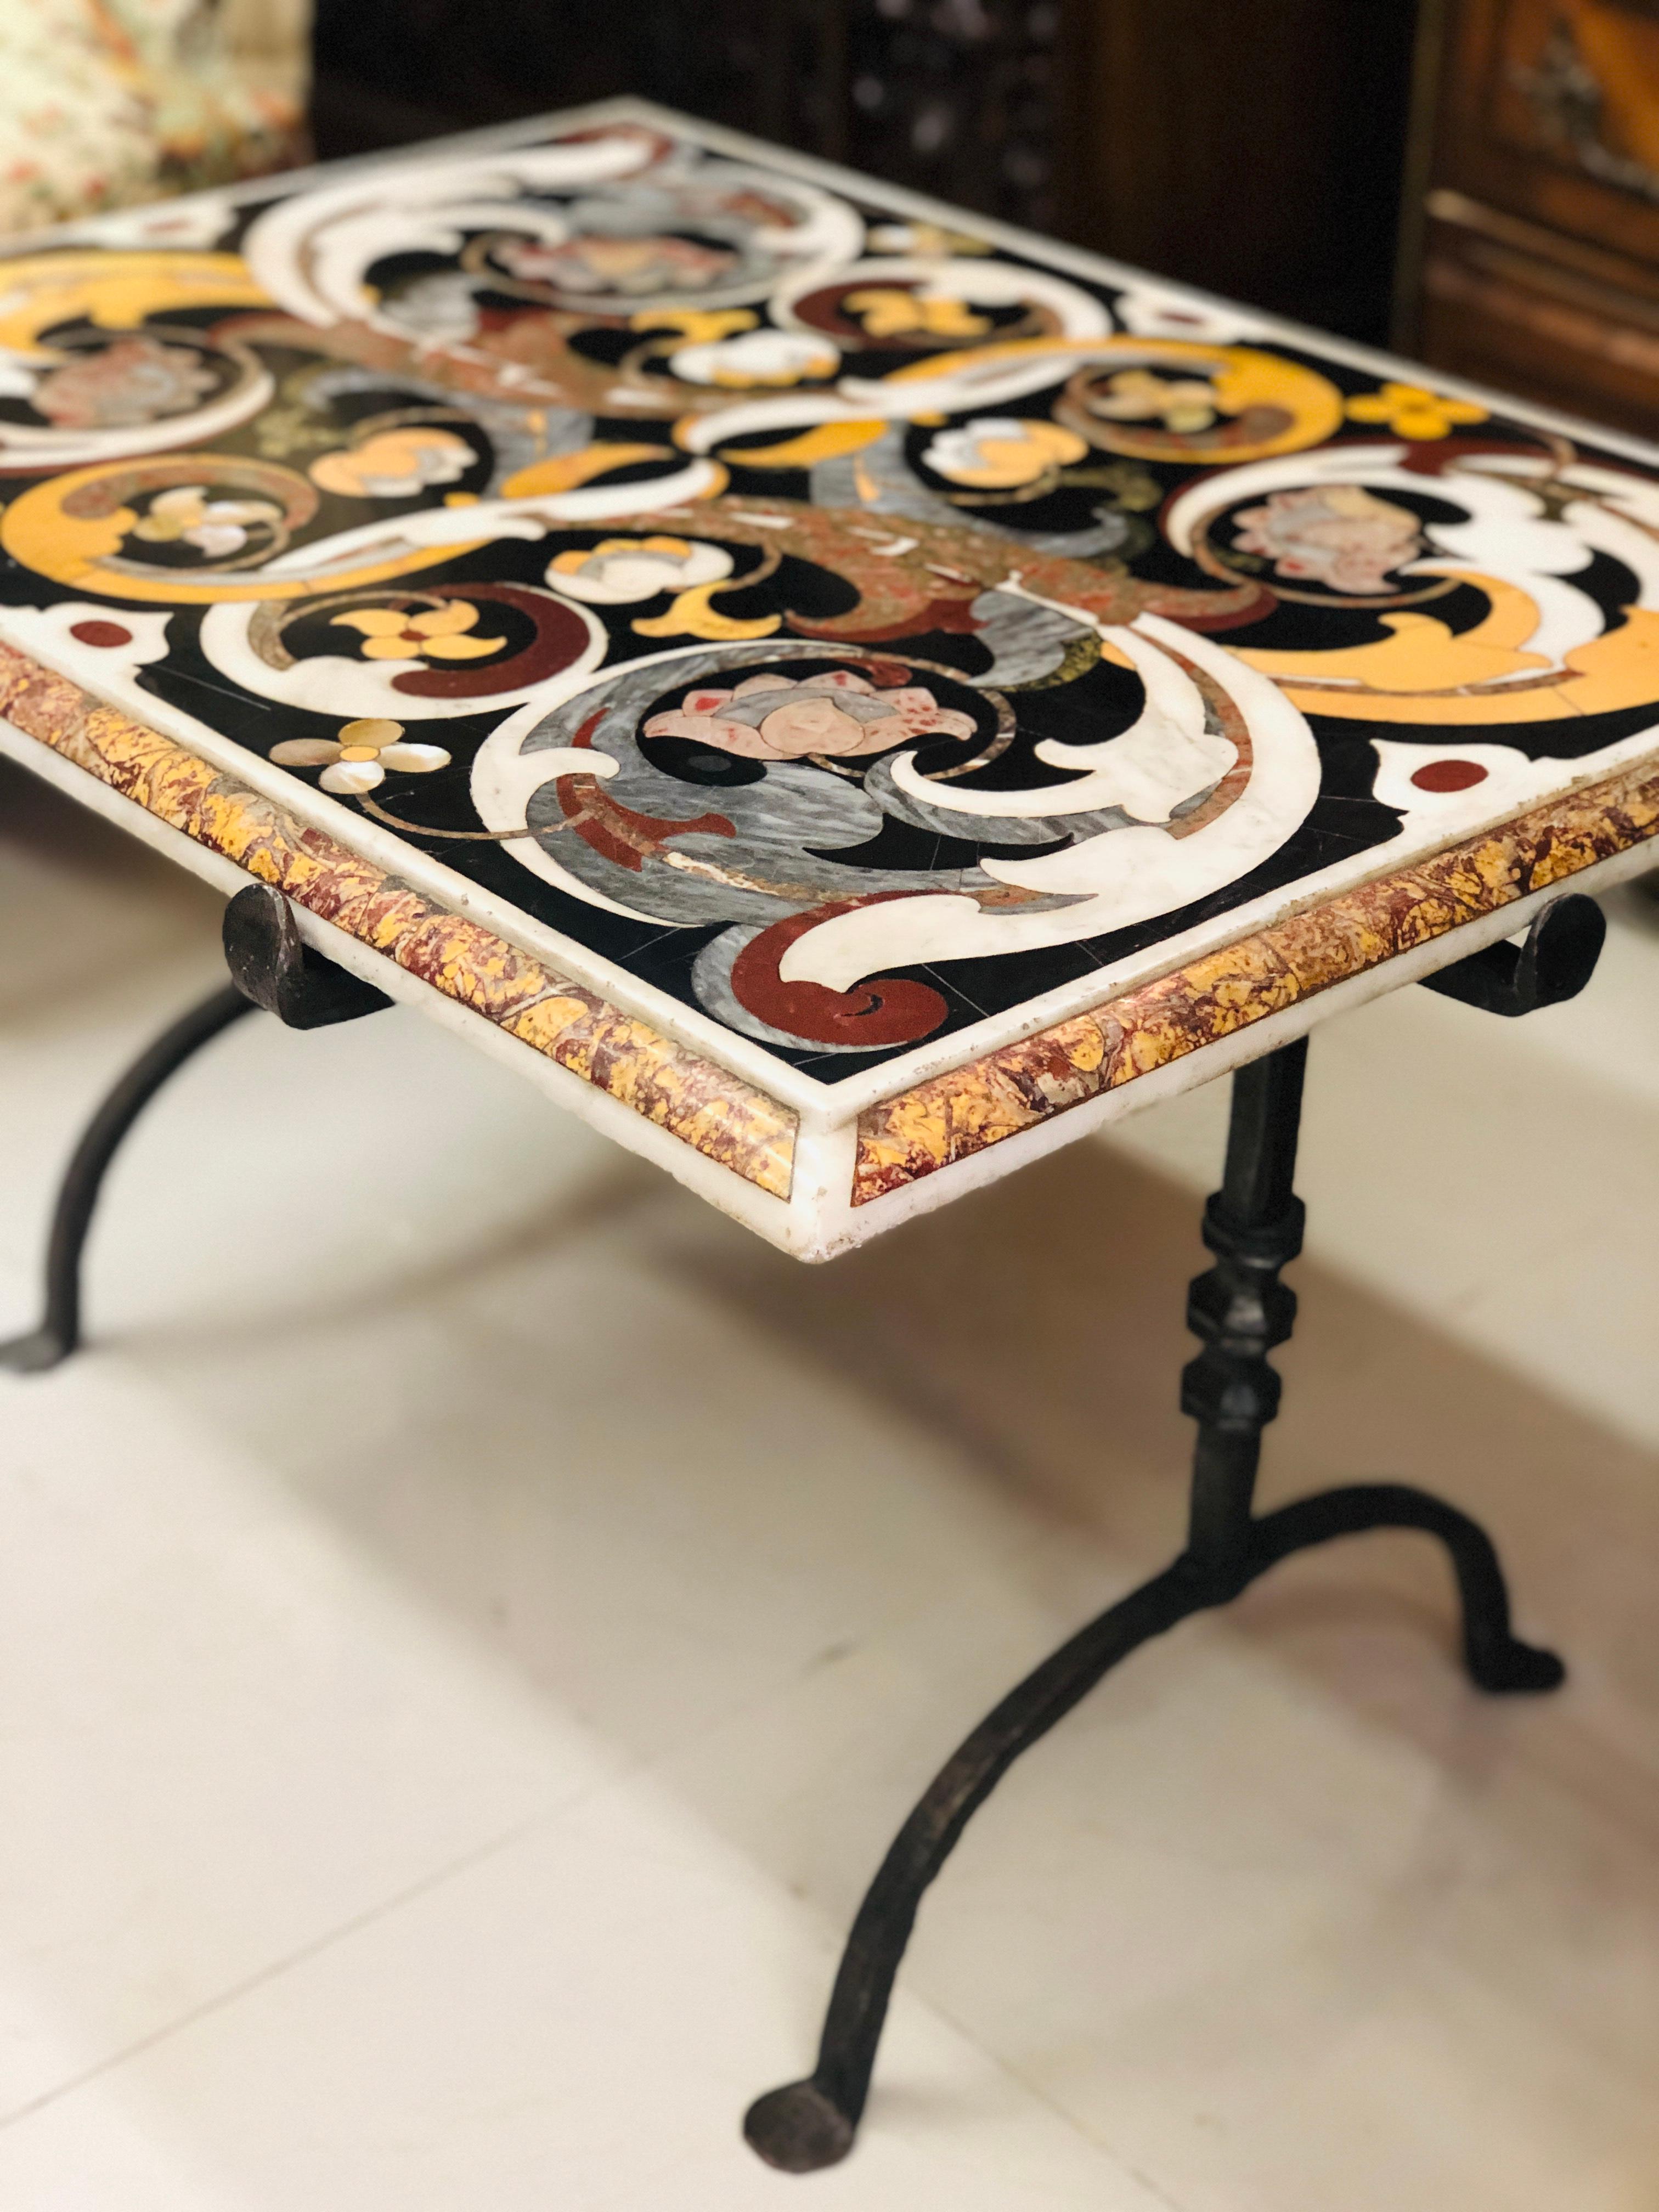 Rare table en marqueterie de marbre multicolore reposant sur des pieds en fer forgé.
Fabriqué au XVIIe siècle dans le style typique de Florentine, avec de nombreux motifs floraux sur une base noire.